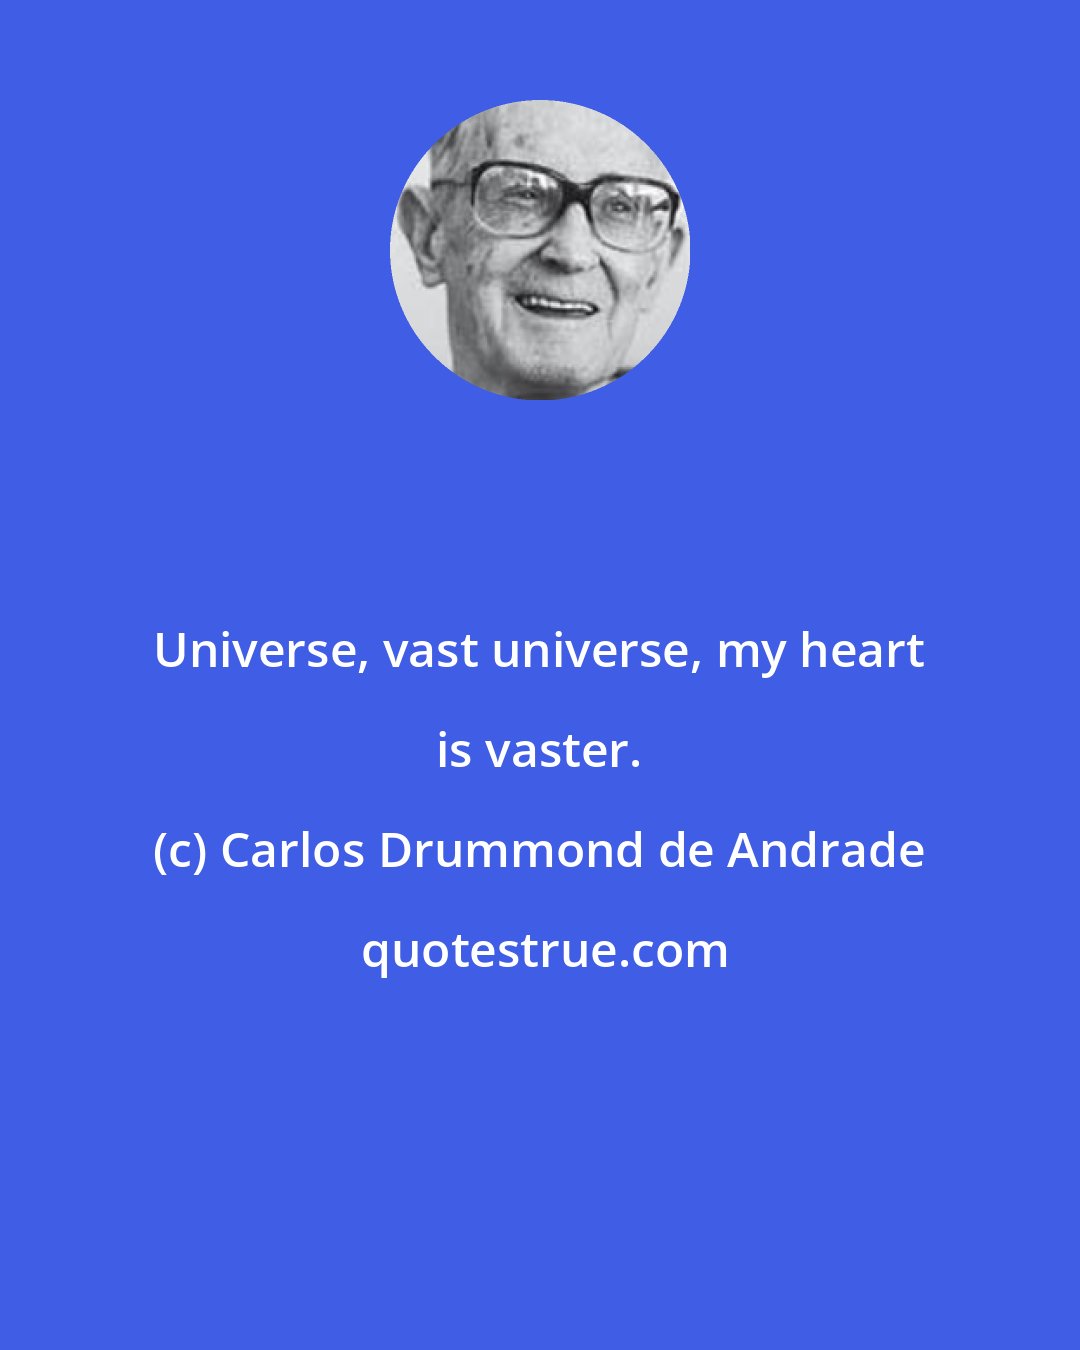 Carlos Drummond de Andrade: Universe, vast universe, my heart is vaster.